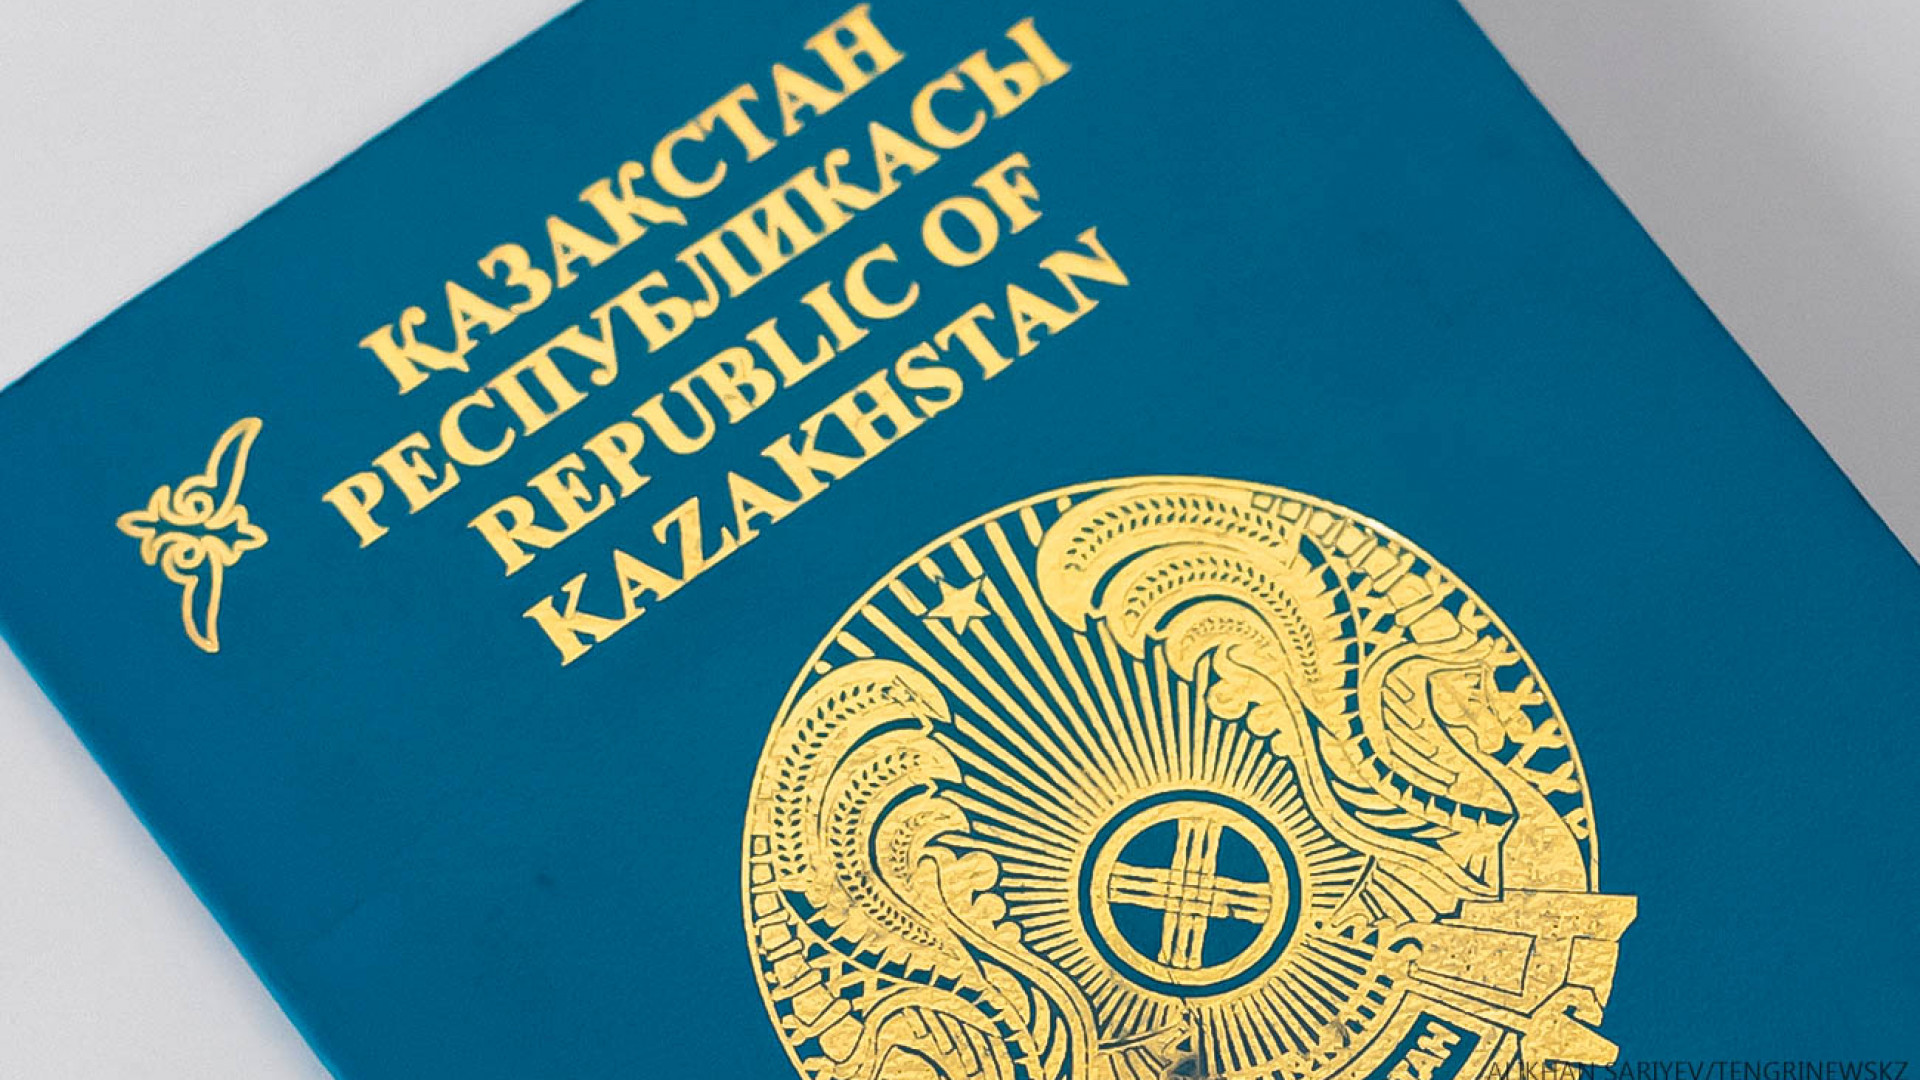 гражданство казахстана